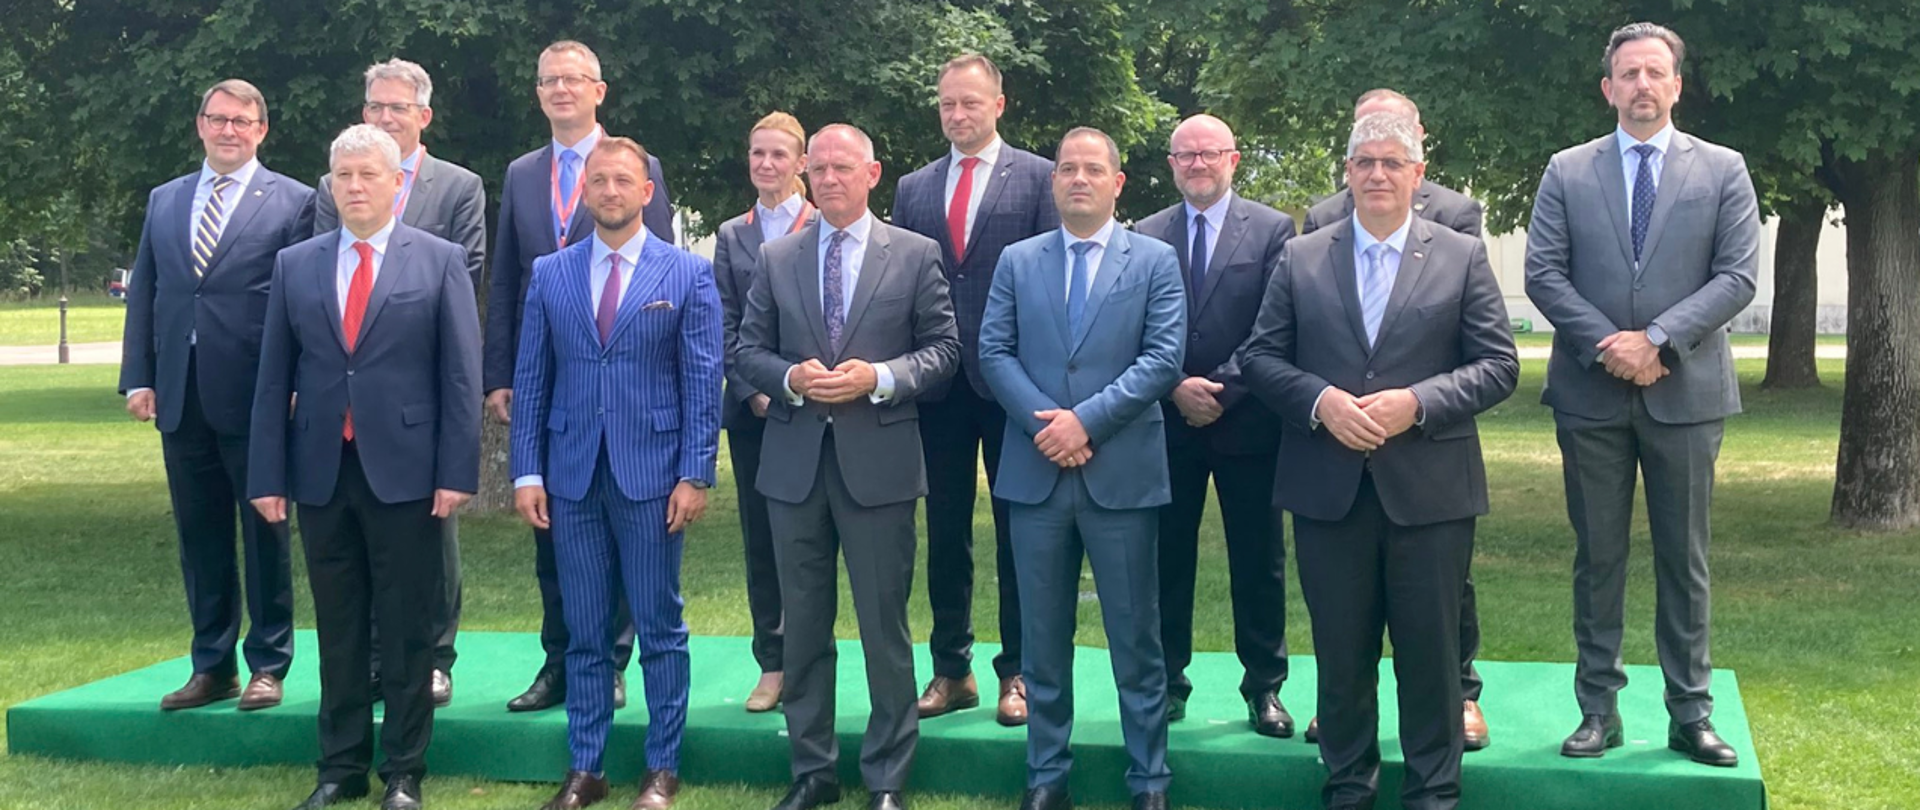 Wiceminister Maciej Duszczyk stojący w grupowym zdjęciu wraz z przedstawicielami innych państw podczas forum w Salzburgu.